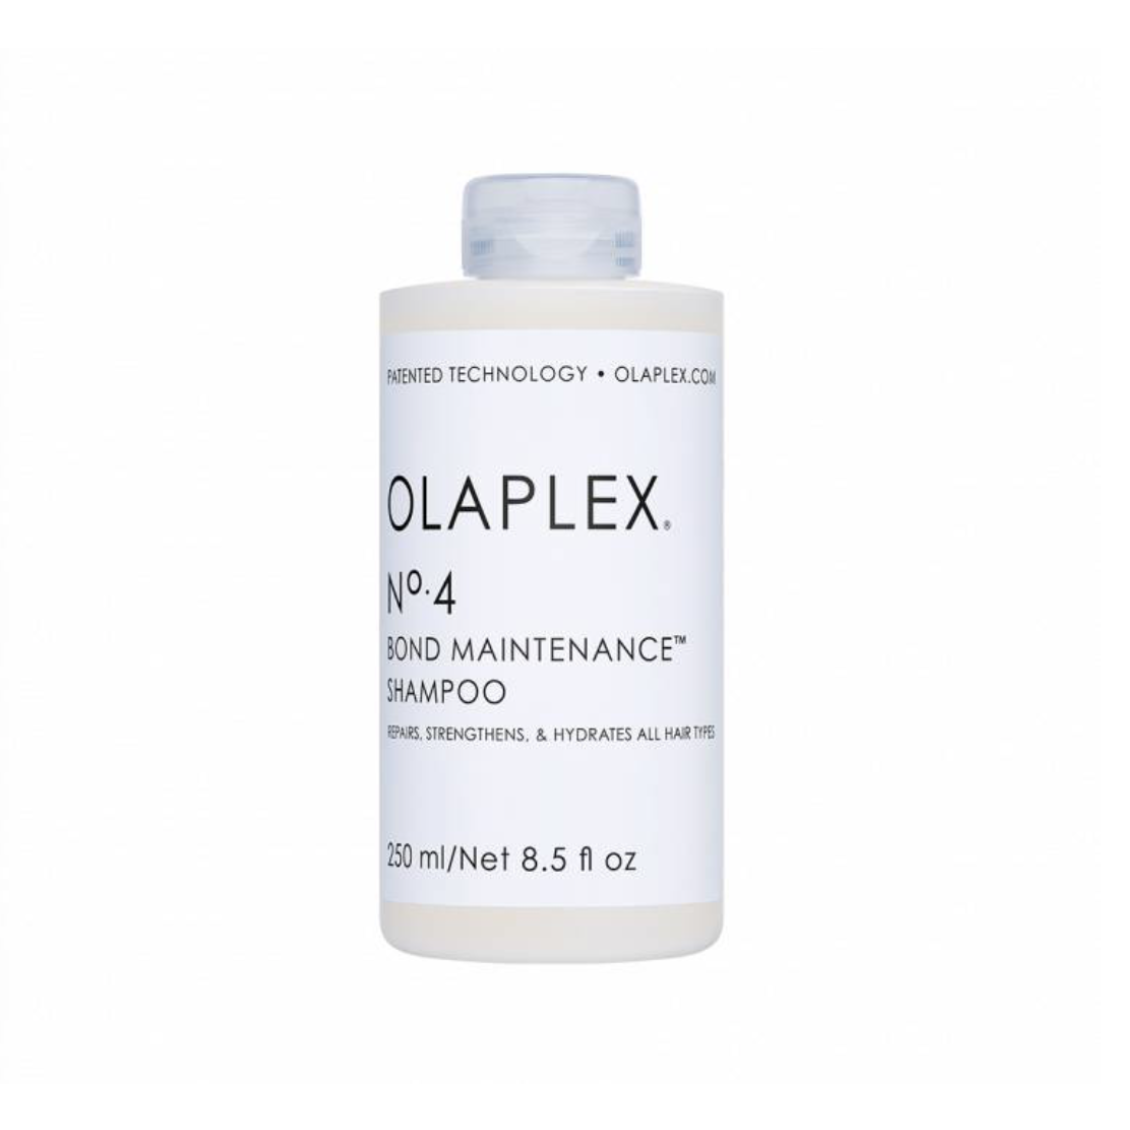 Olaplex‚® No. 4 Shampoo